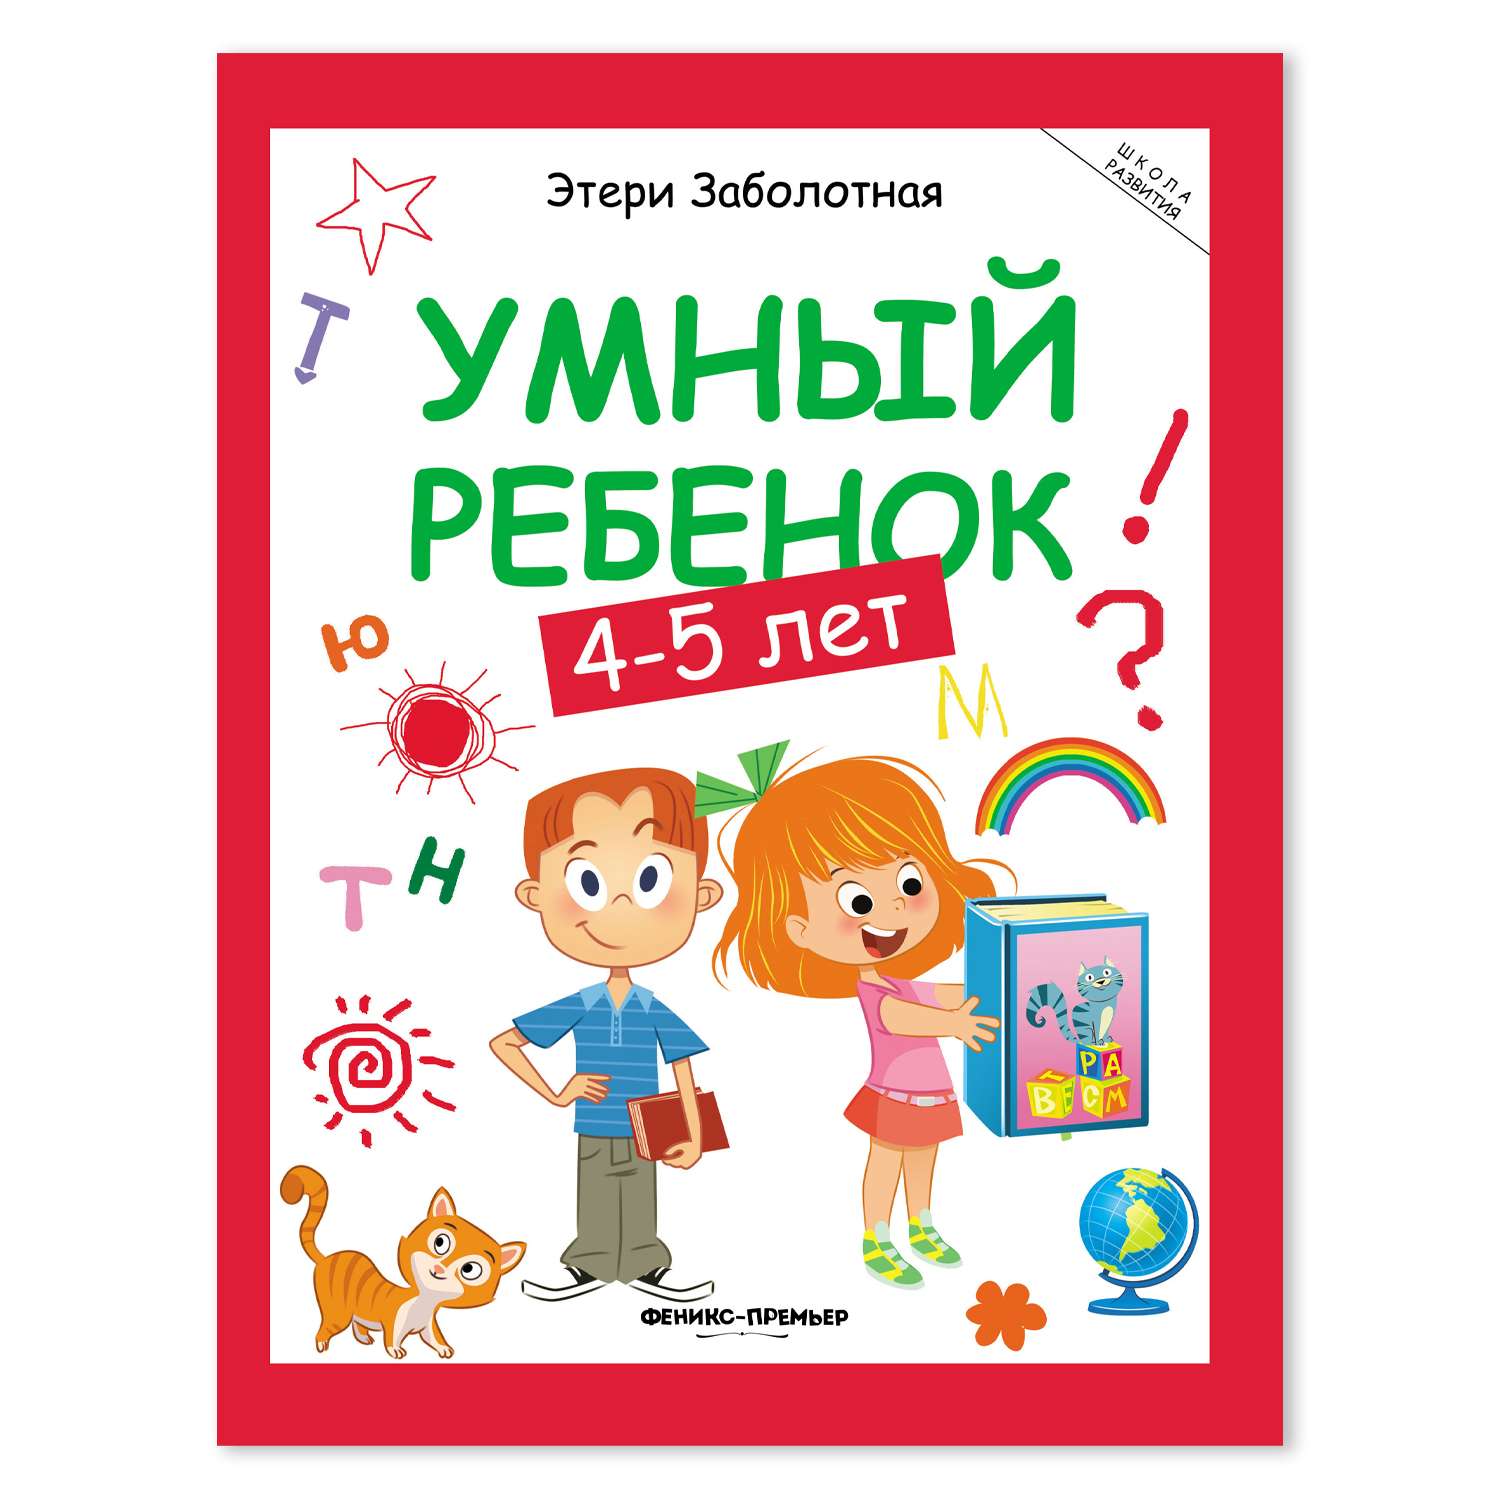 Книга Феникс Премьер Умный ребенок 4-5 лет развитие - фото 2